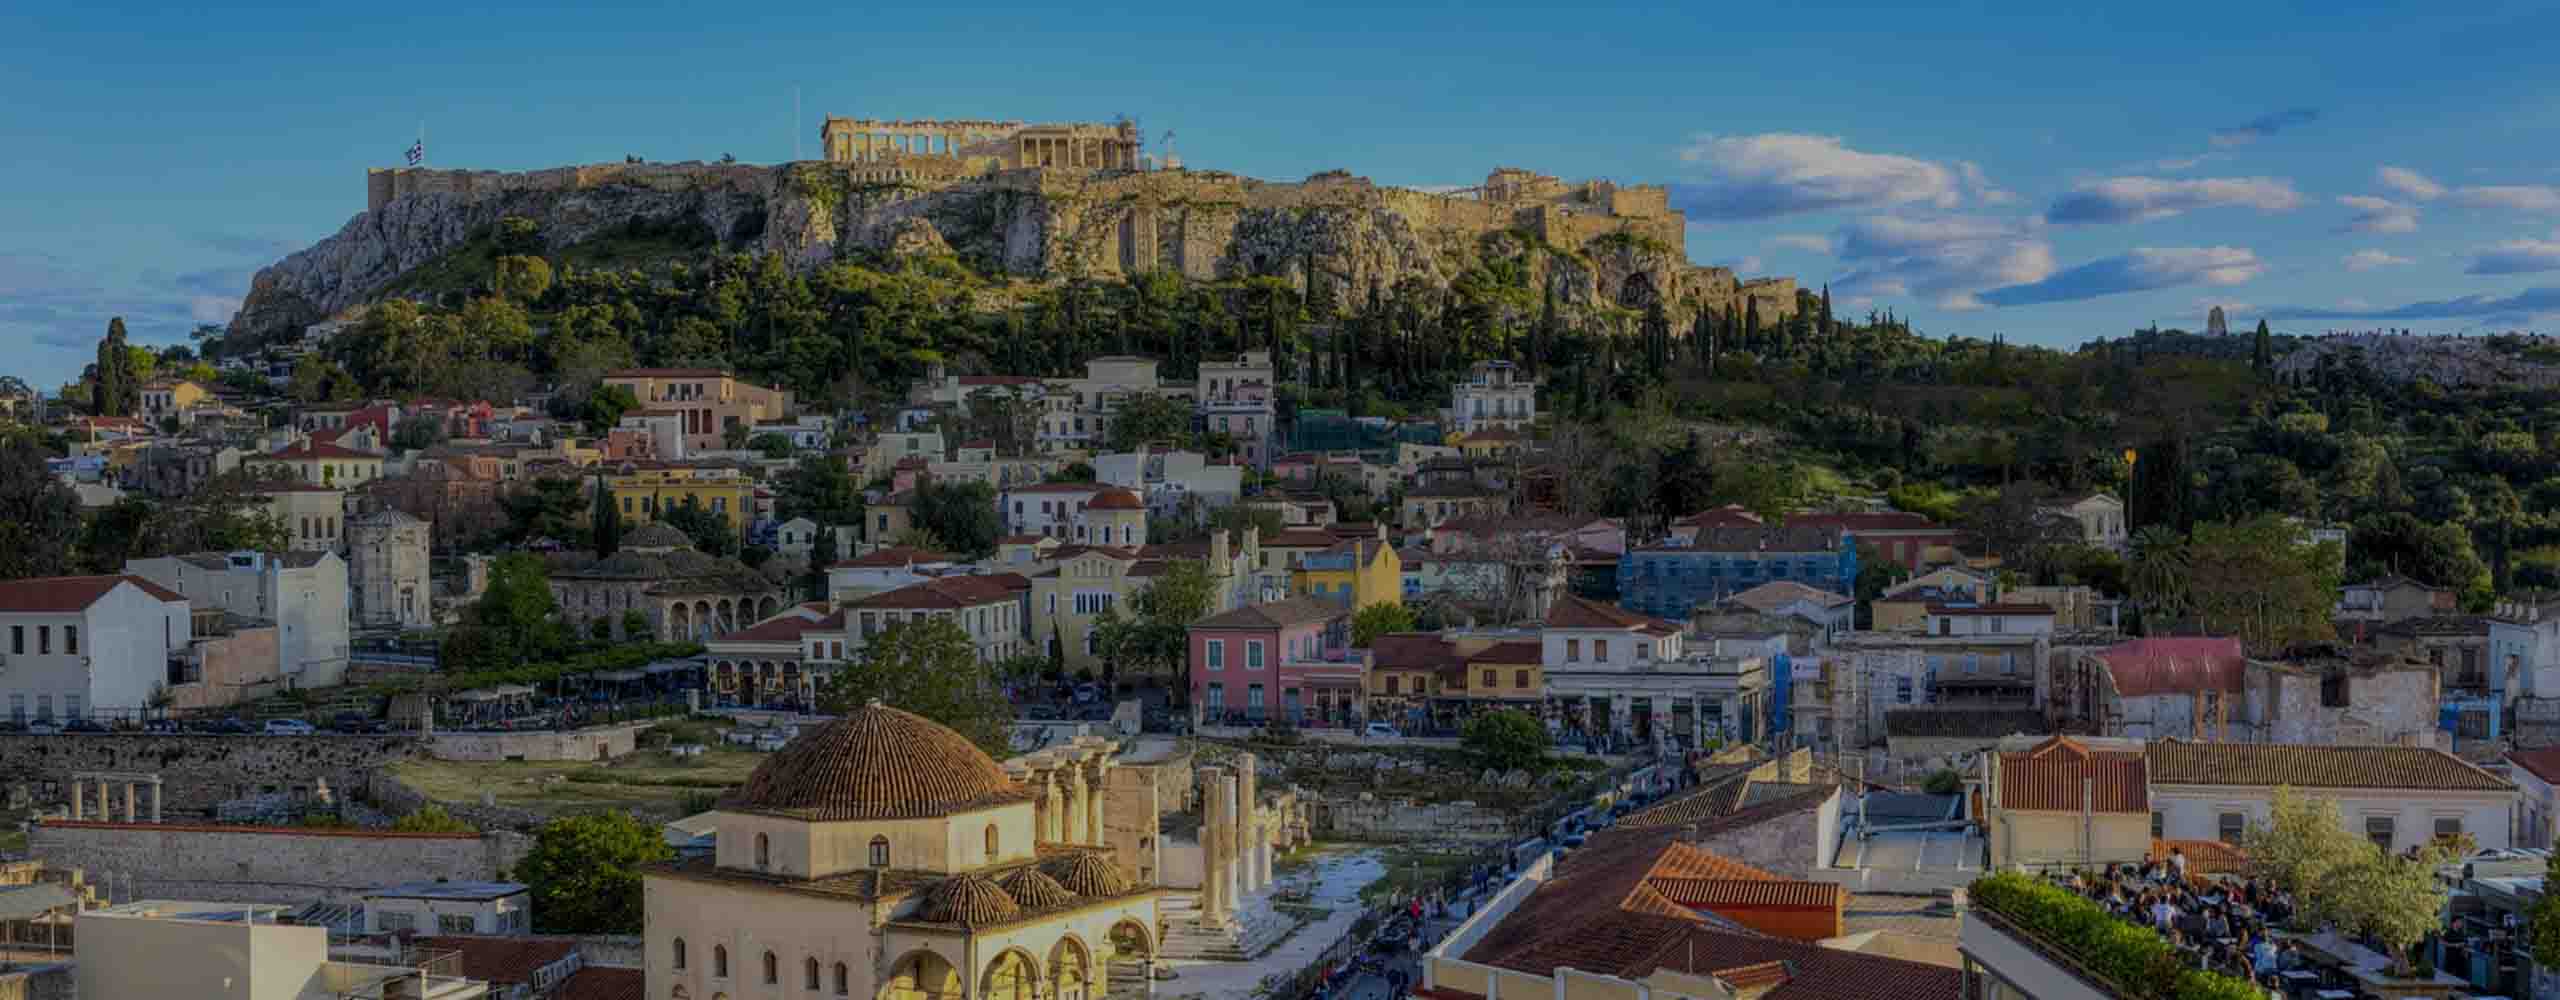 Greek World Heritage List